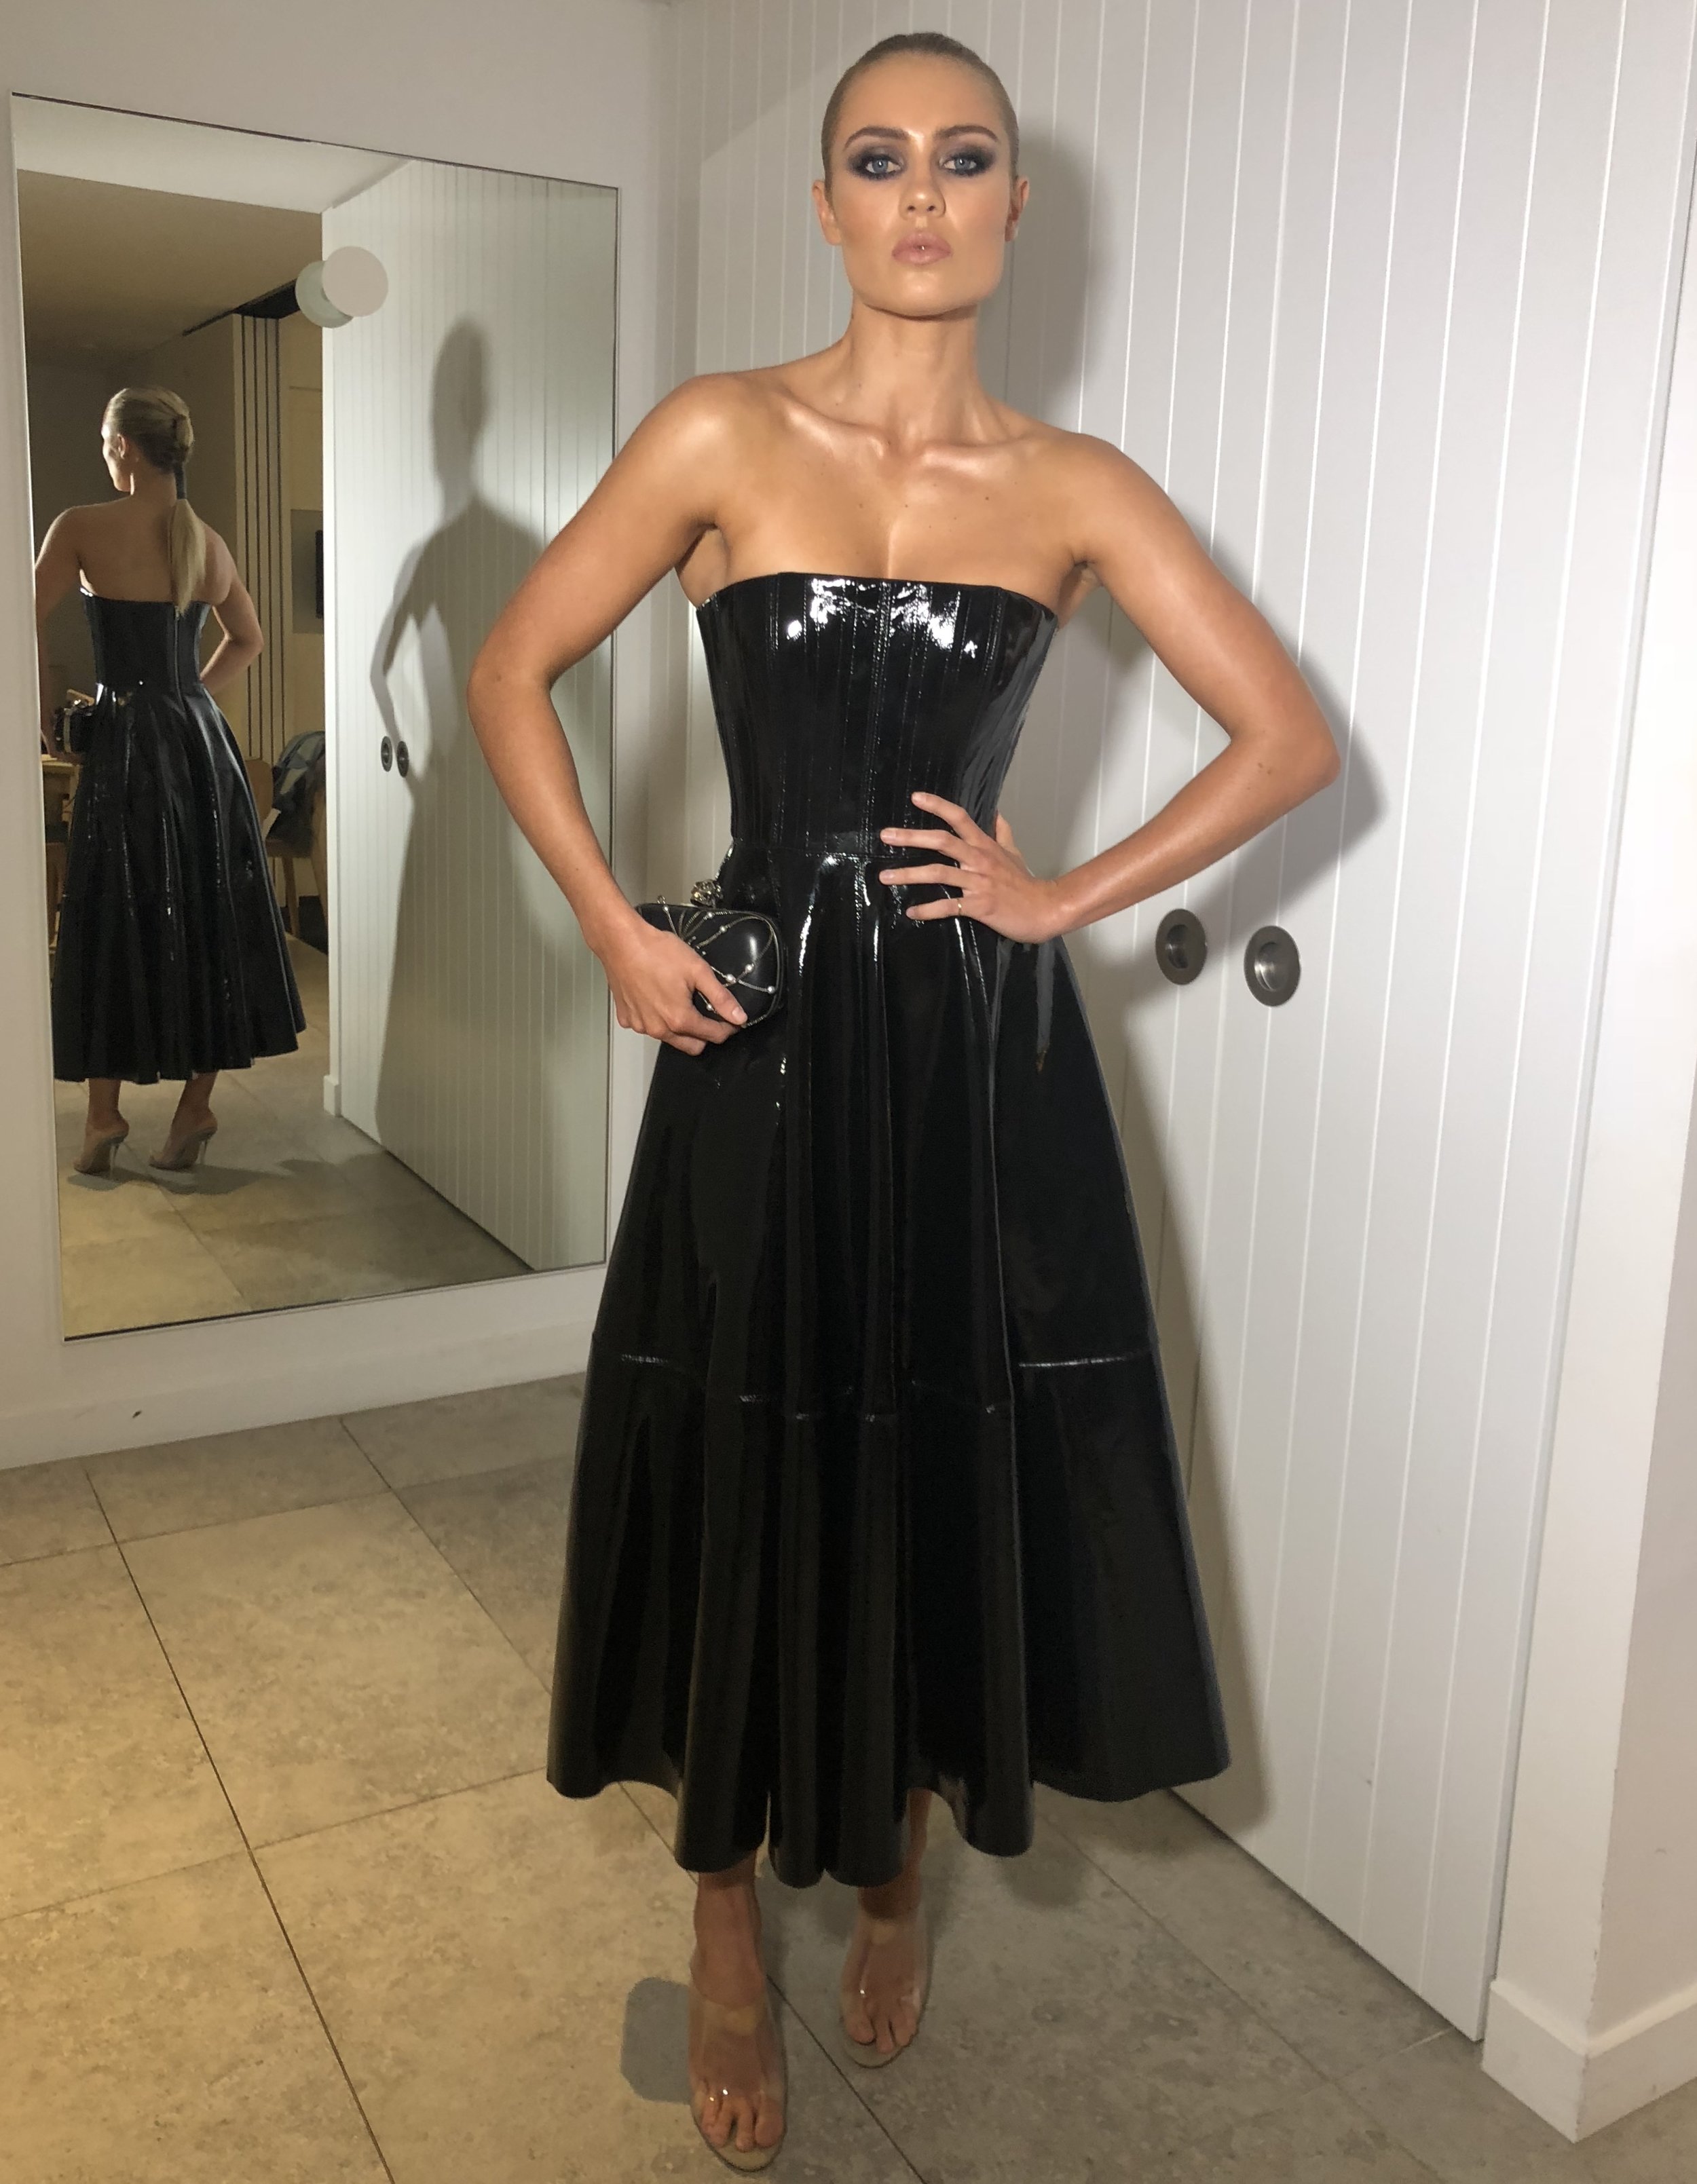 Women Of Style 2018 Awards - Elyse Knowles 4.jpg